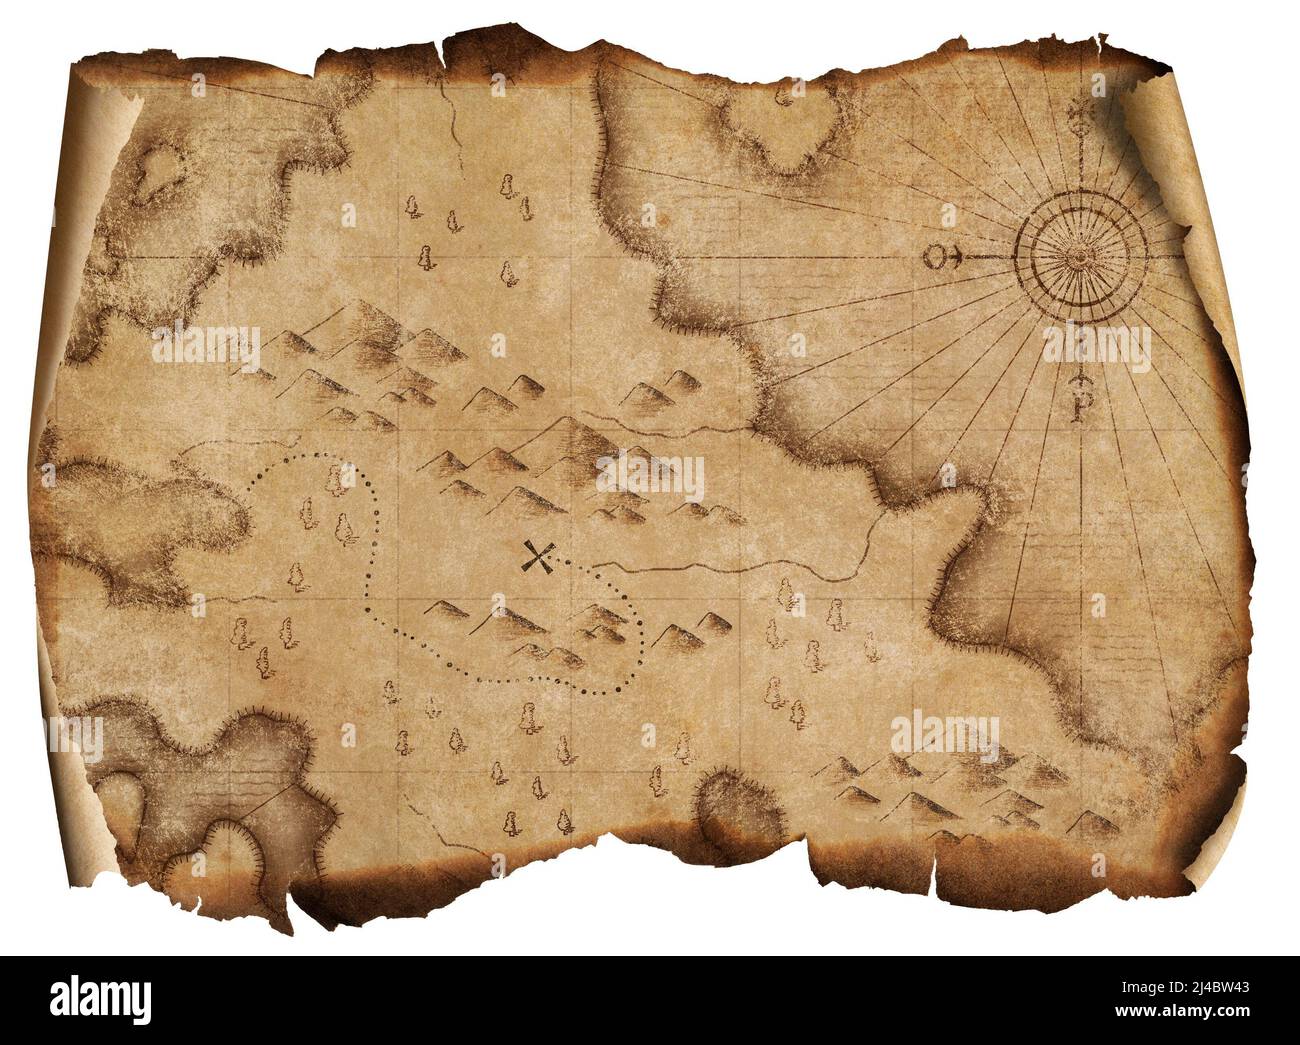 mapa de piratas medievales con tesoros quemados aislados Foto de stock